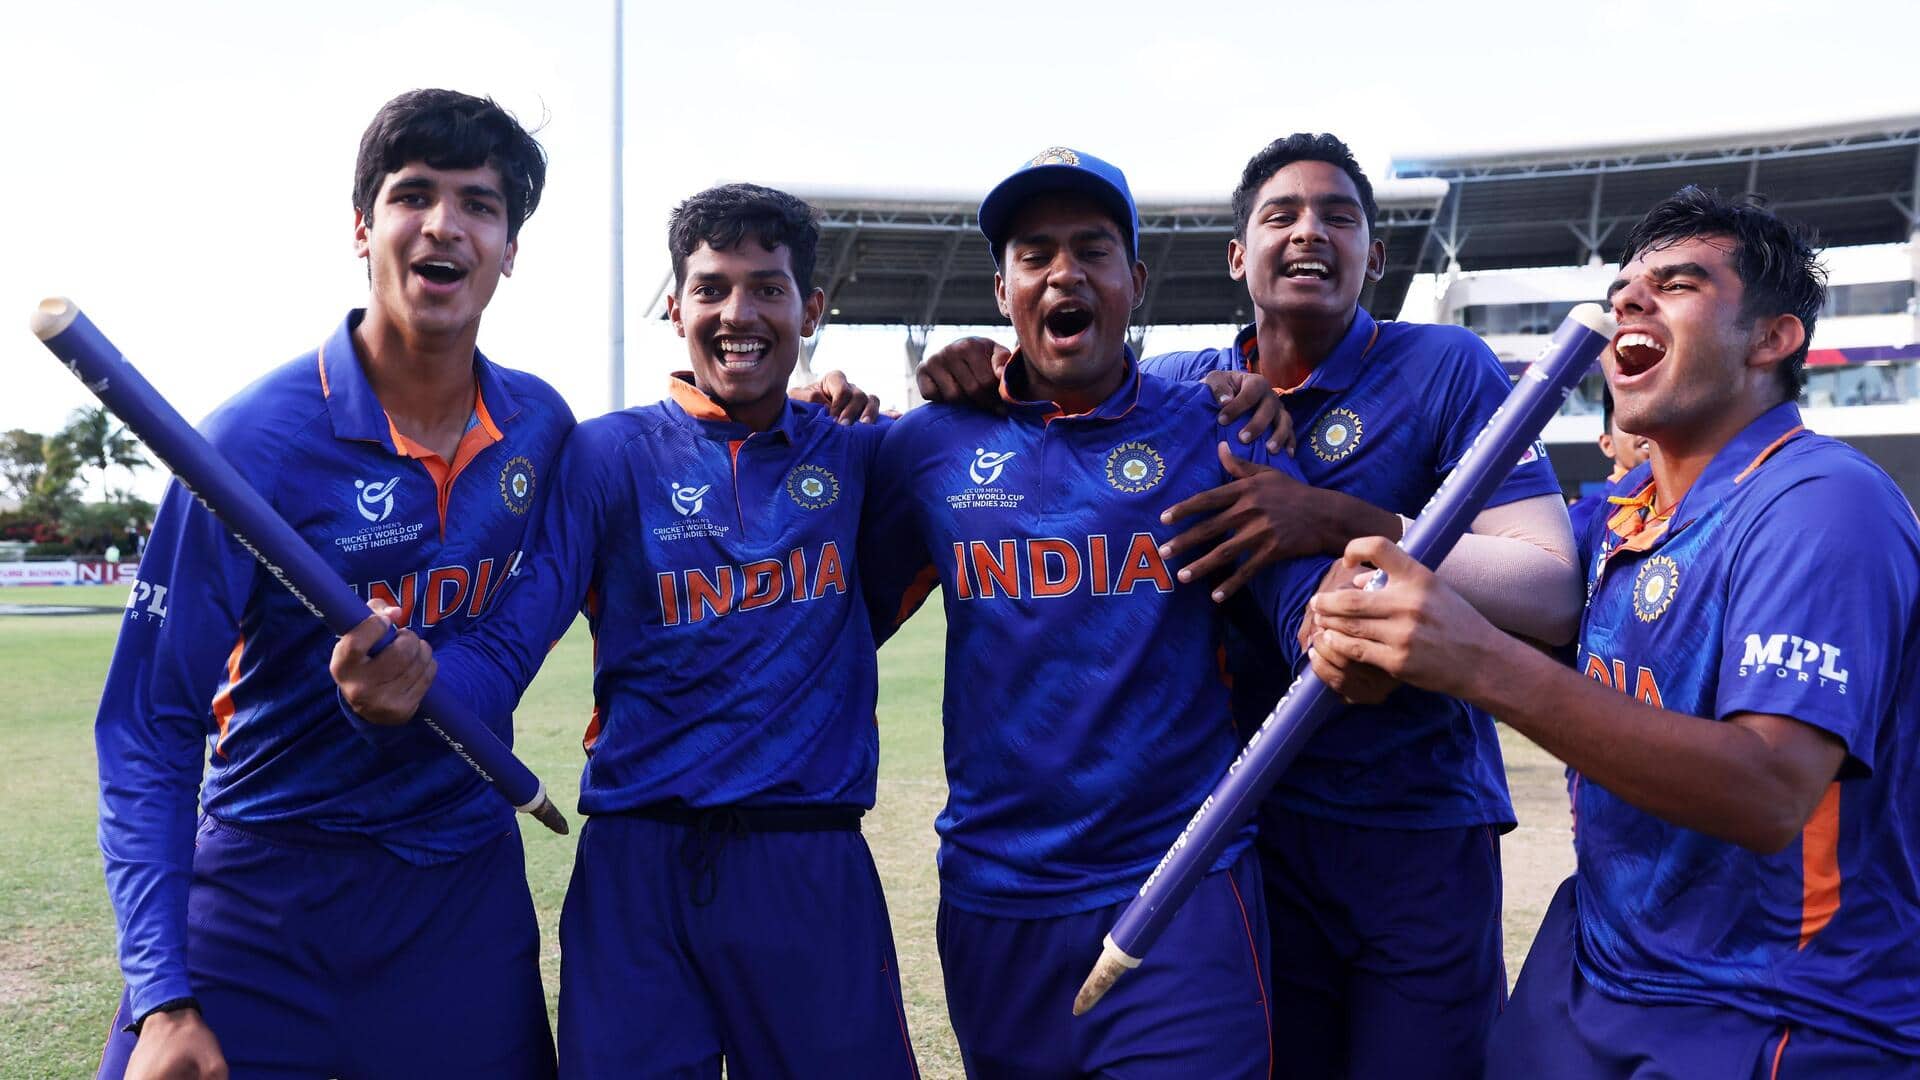 अंडर-19 विश्व कप में 5 बार खिताब जीत चुकी है भारतीय टीम, आंकड़ों में जानिए प्रदर्शन